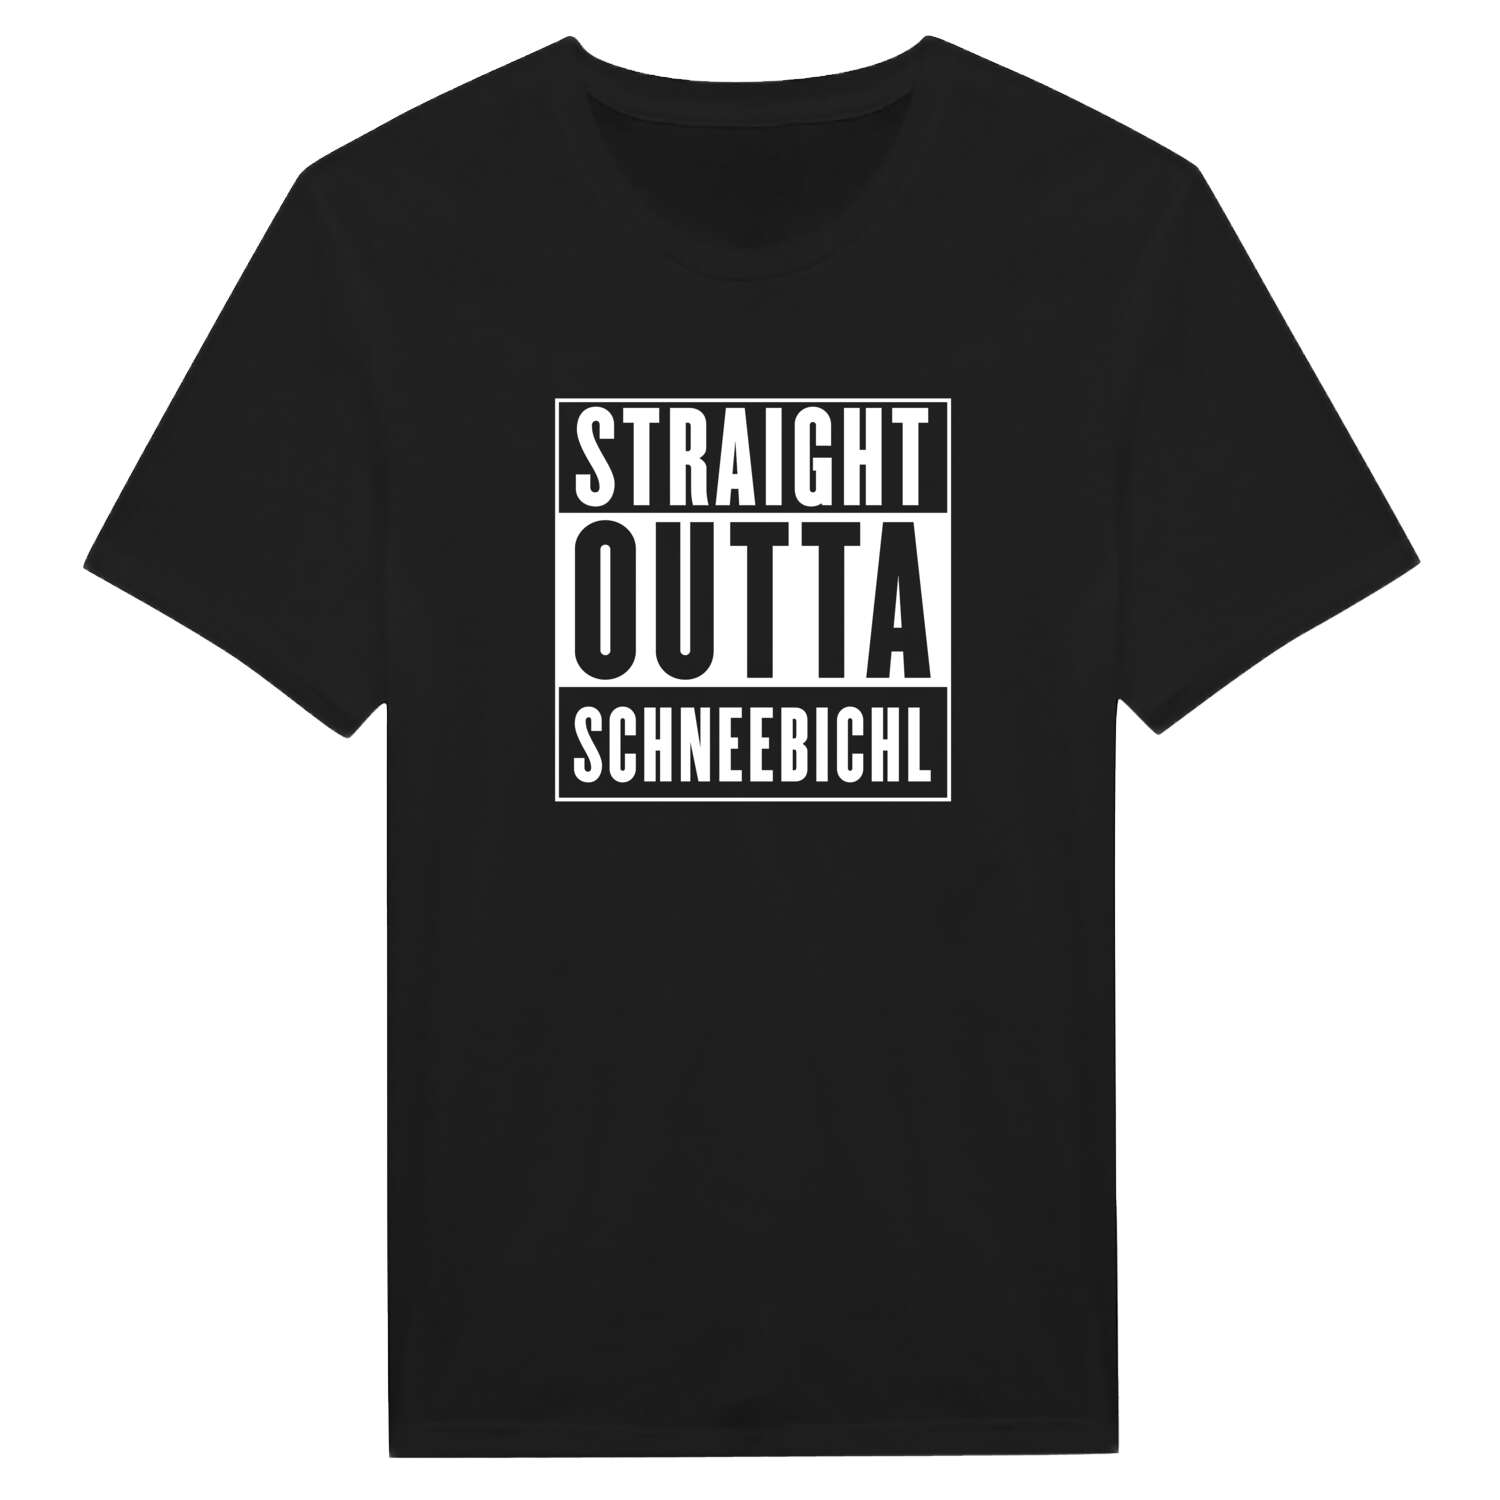 Schneebichl T-Shirt »Straight Outta«